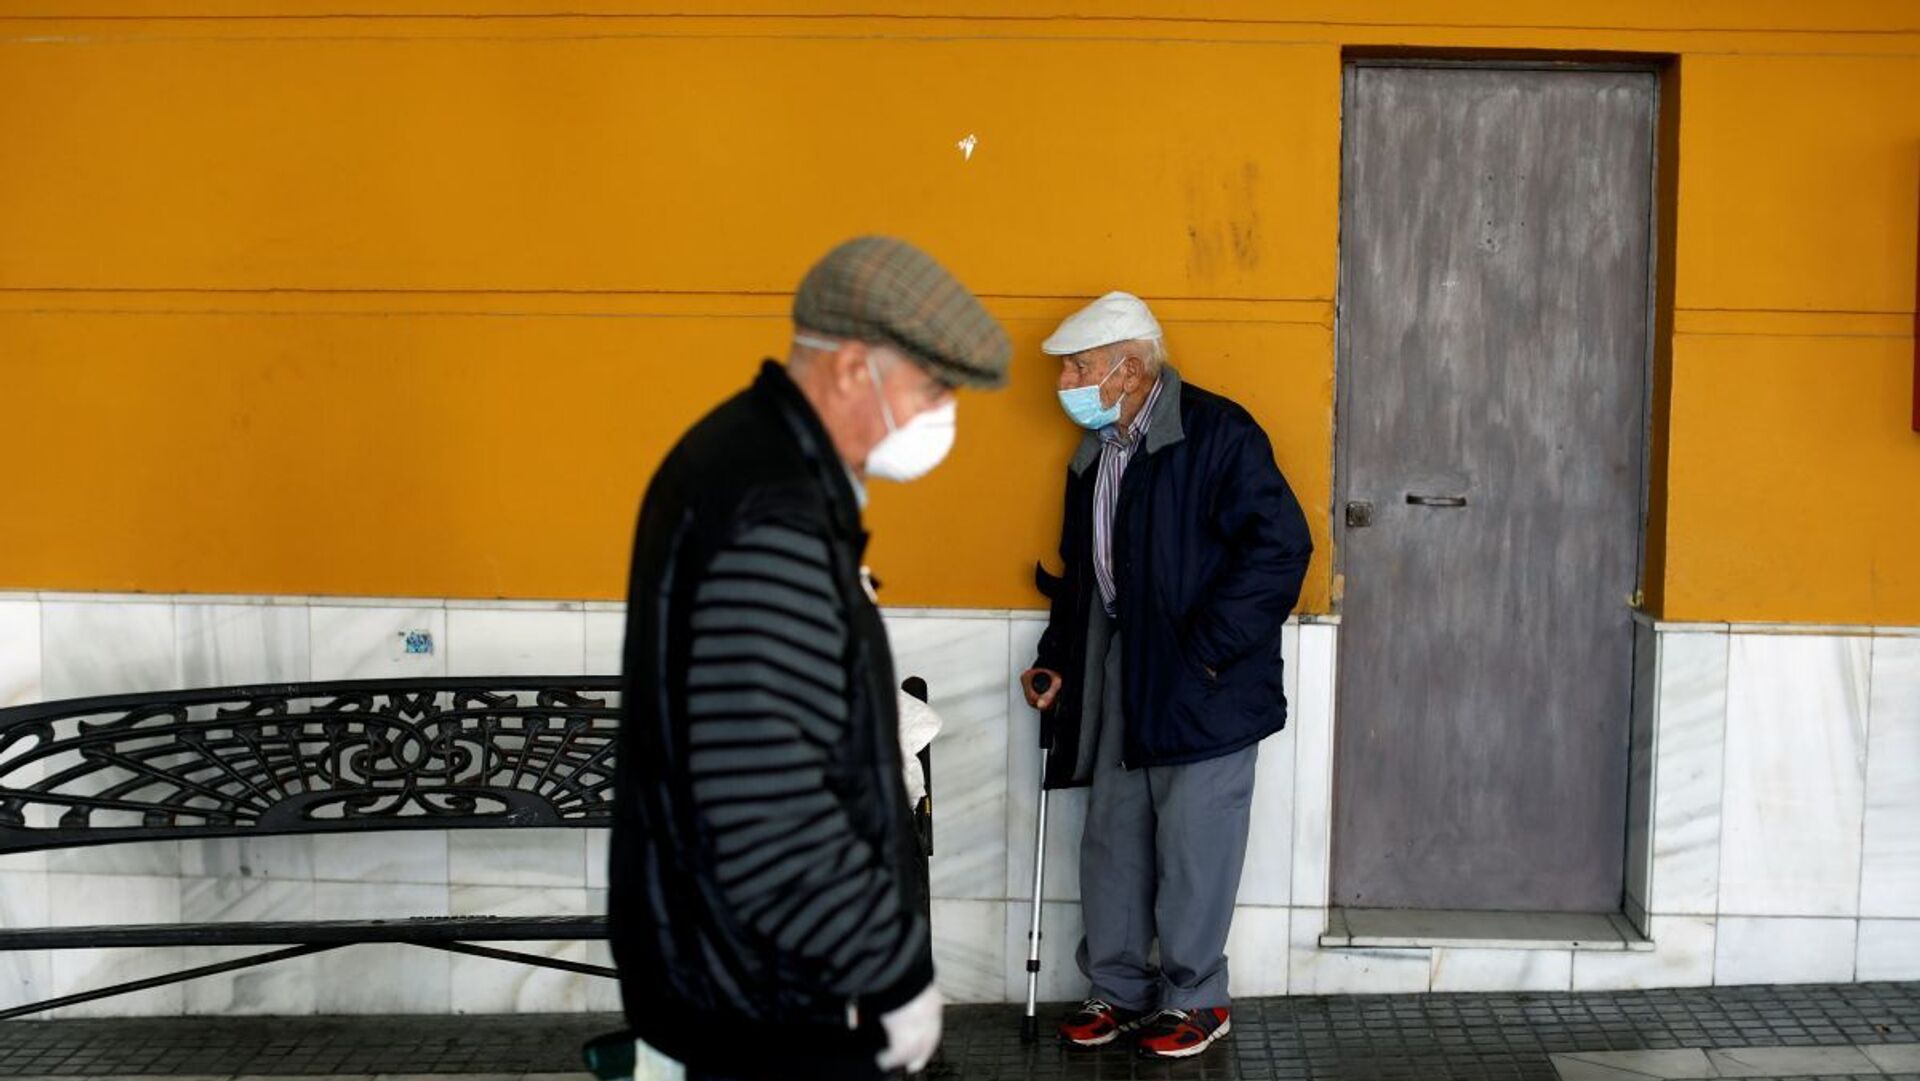 Пожилые люди в масках, фото из архива - Sputnik Азербайджан, 1920, 23.03.2021